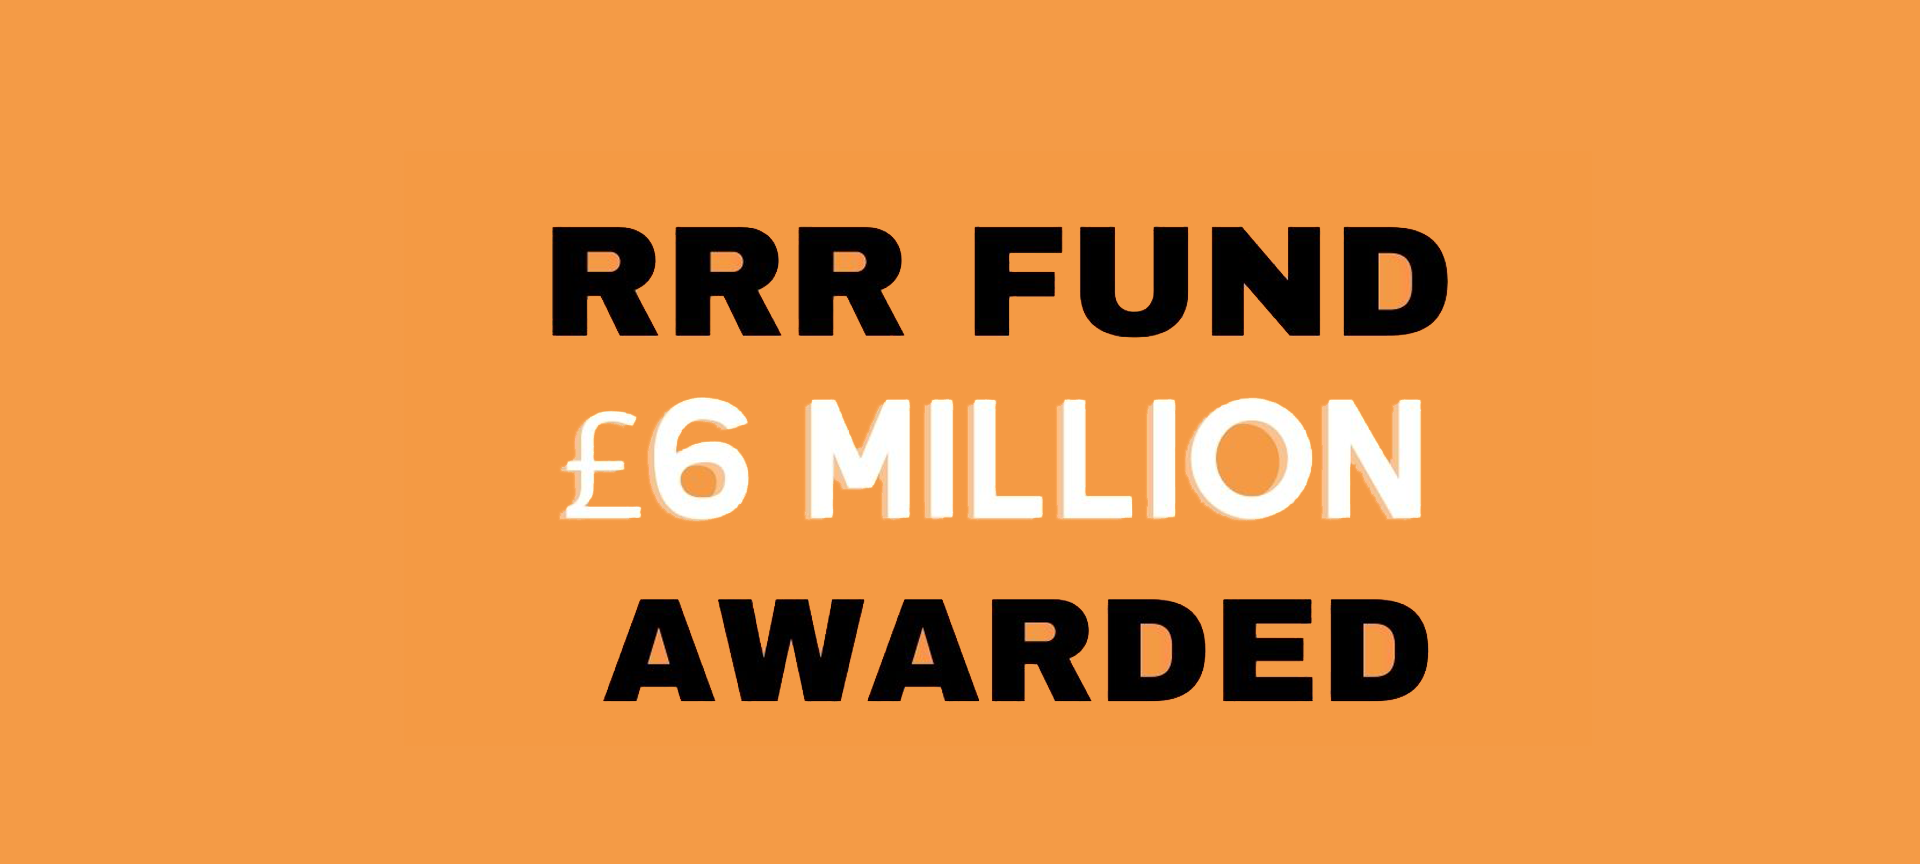 6 Million Milestone for RRR